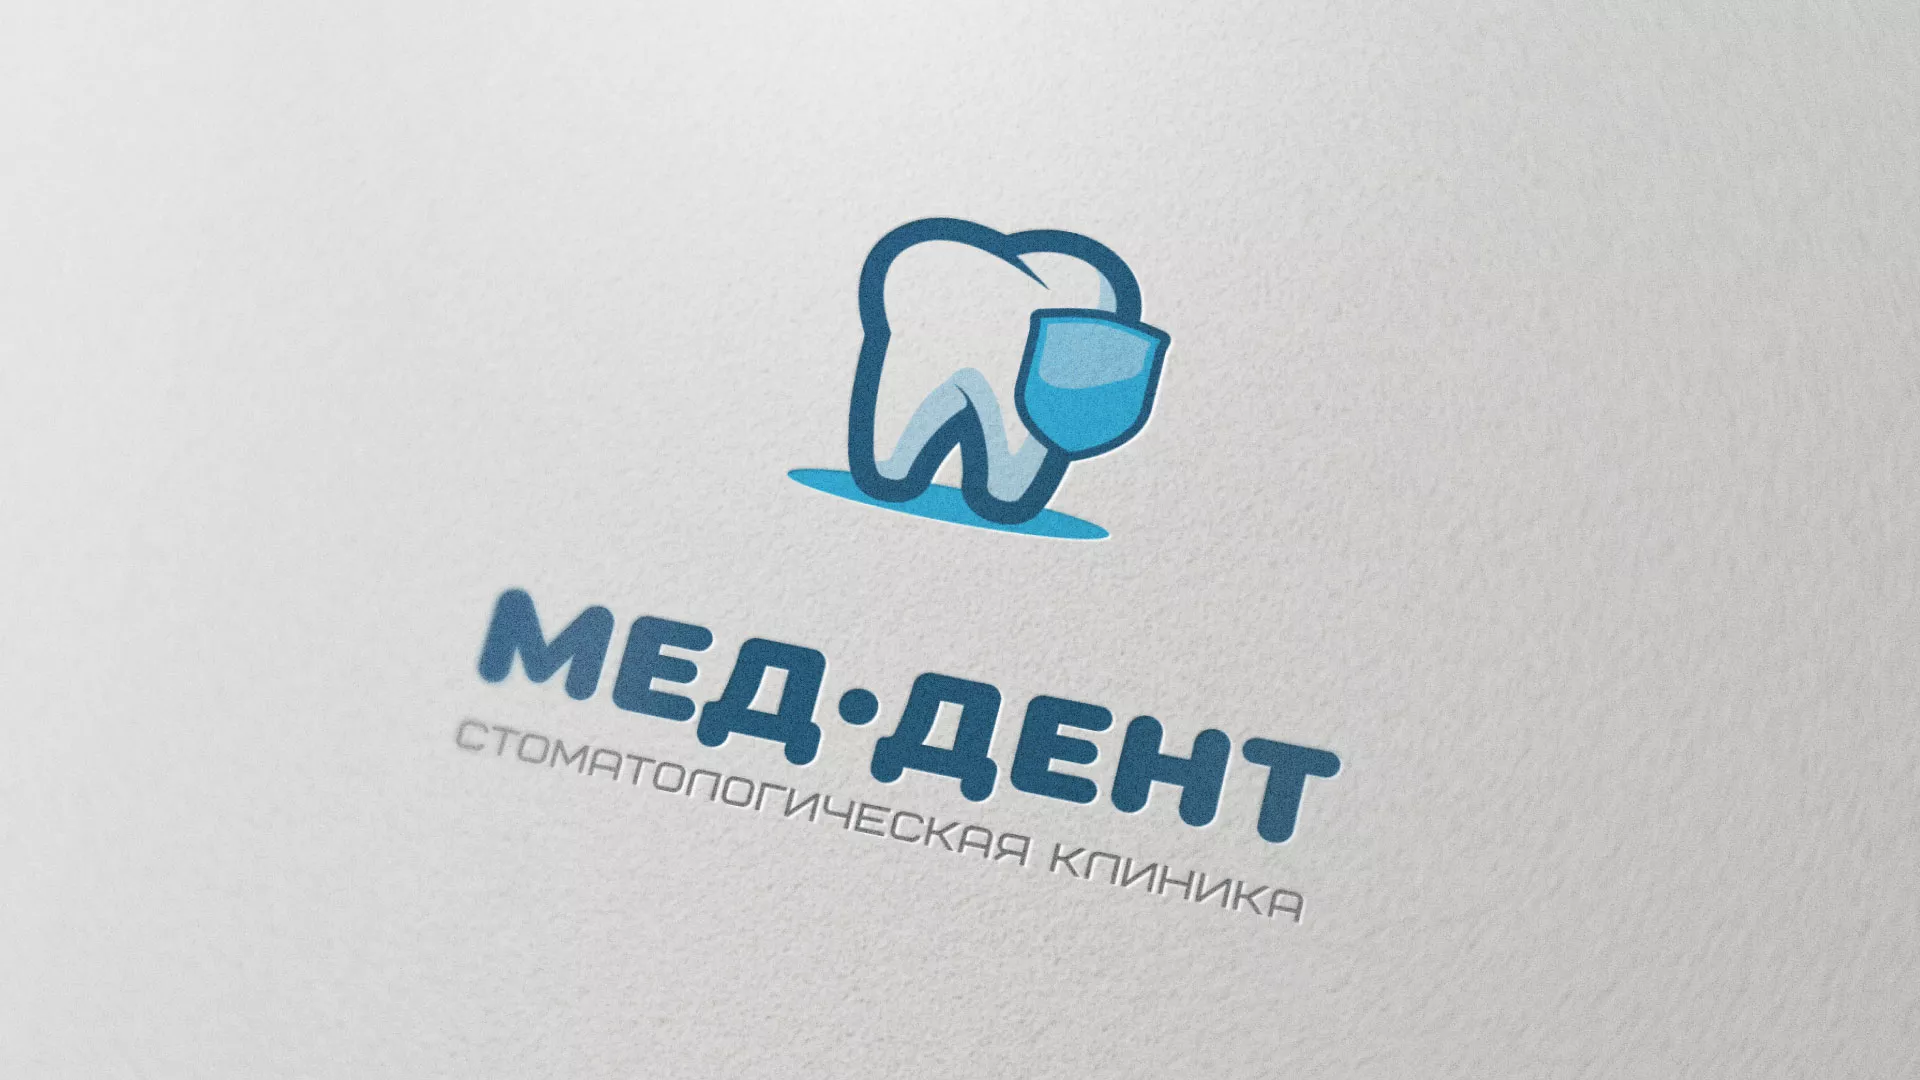 Разработка логотипа стоматологической клиники «МЕД-ДЕНТ» в Заполярном